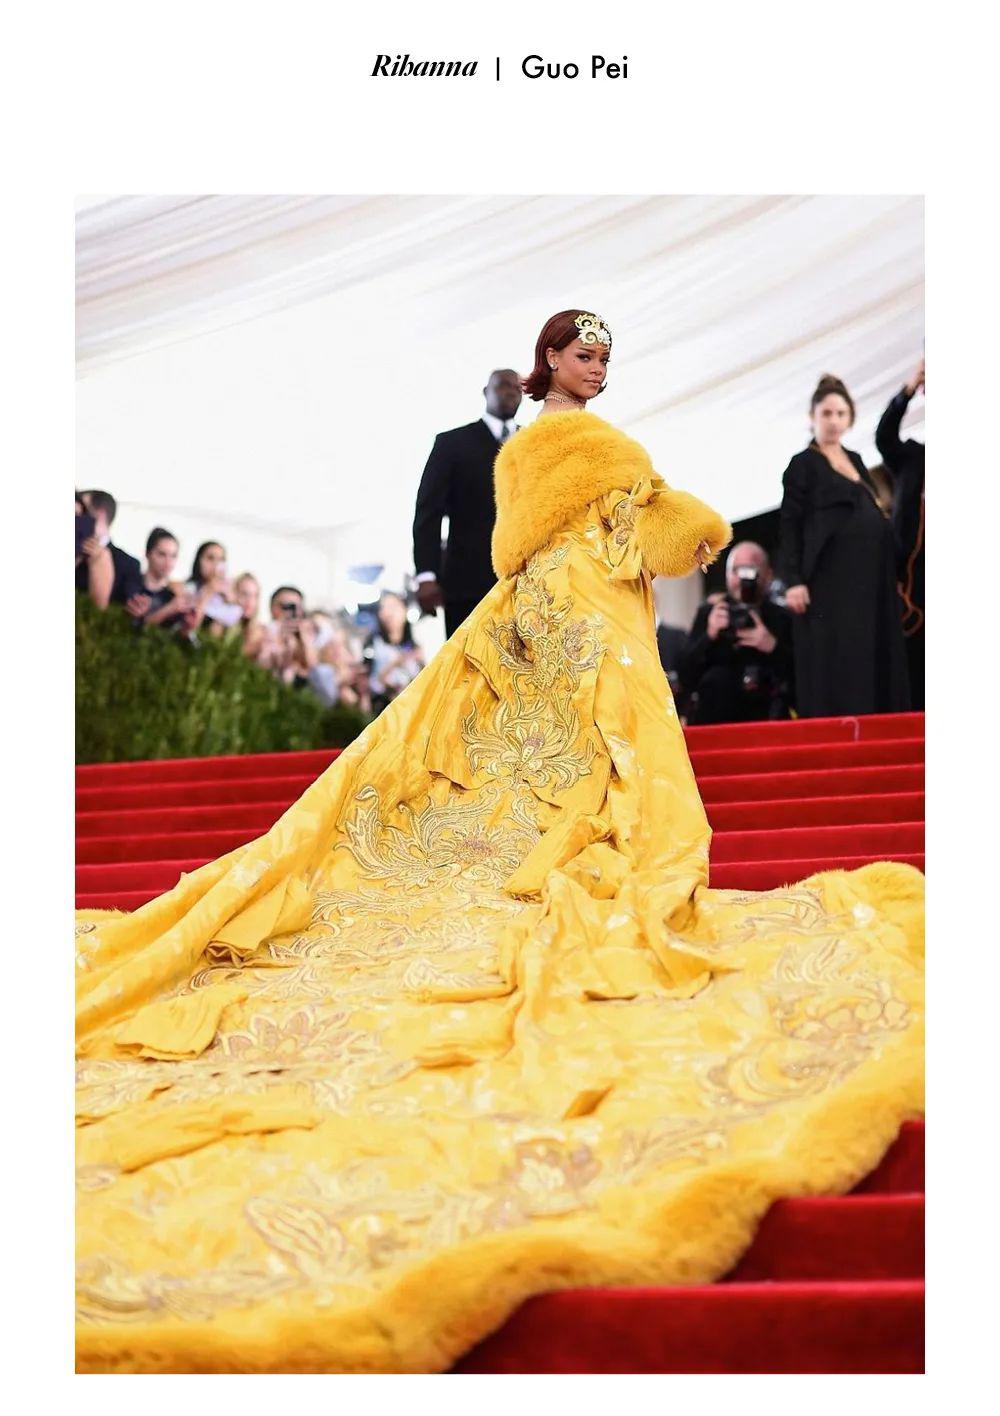 时尚魔咒 “ 淡黄的长裙，蓬松的头发 ”，搞黄色也是一门学问啊